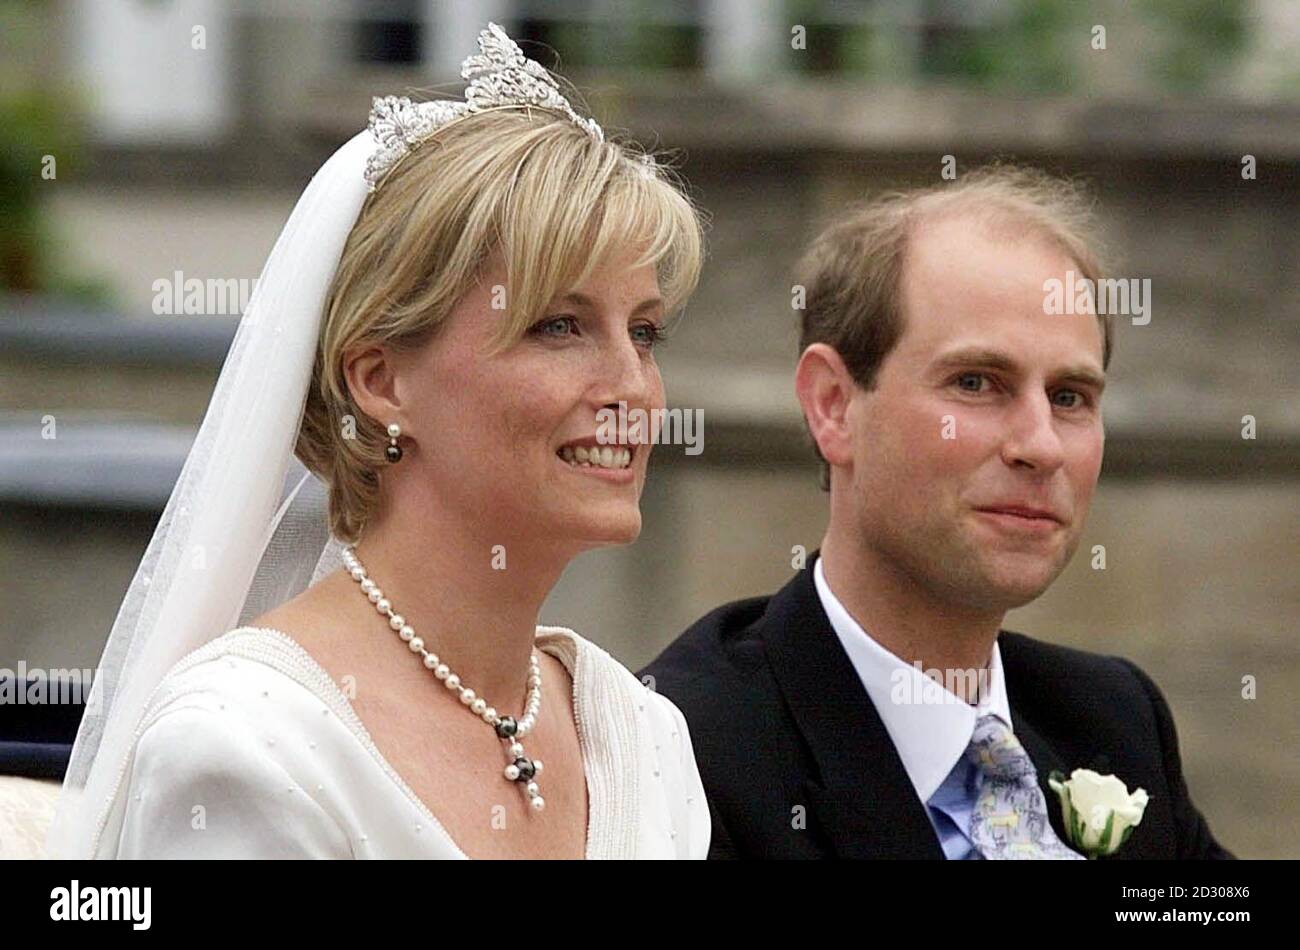 HRH le Prince Edward et sa mariée Sophie Rhys-Jones, qui sera ensuite connue sous le nom de comte et comtesse de Wessex, quittent la chapelle Saint-Georges au château de Windsor en une calèche à ciel ouvert après leur mariage. Banque D'Images